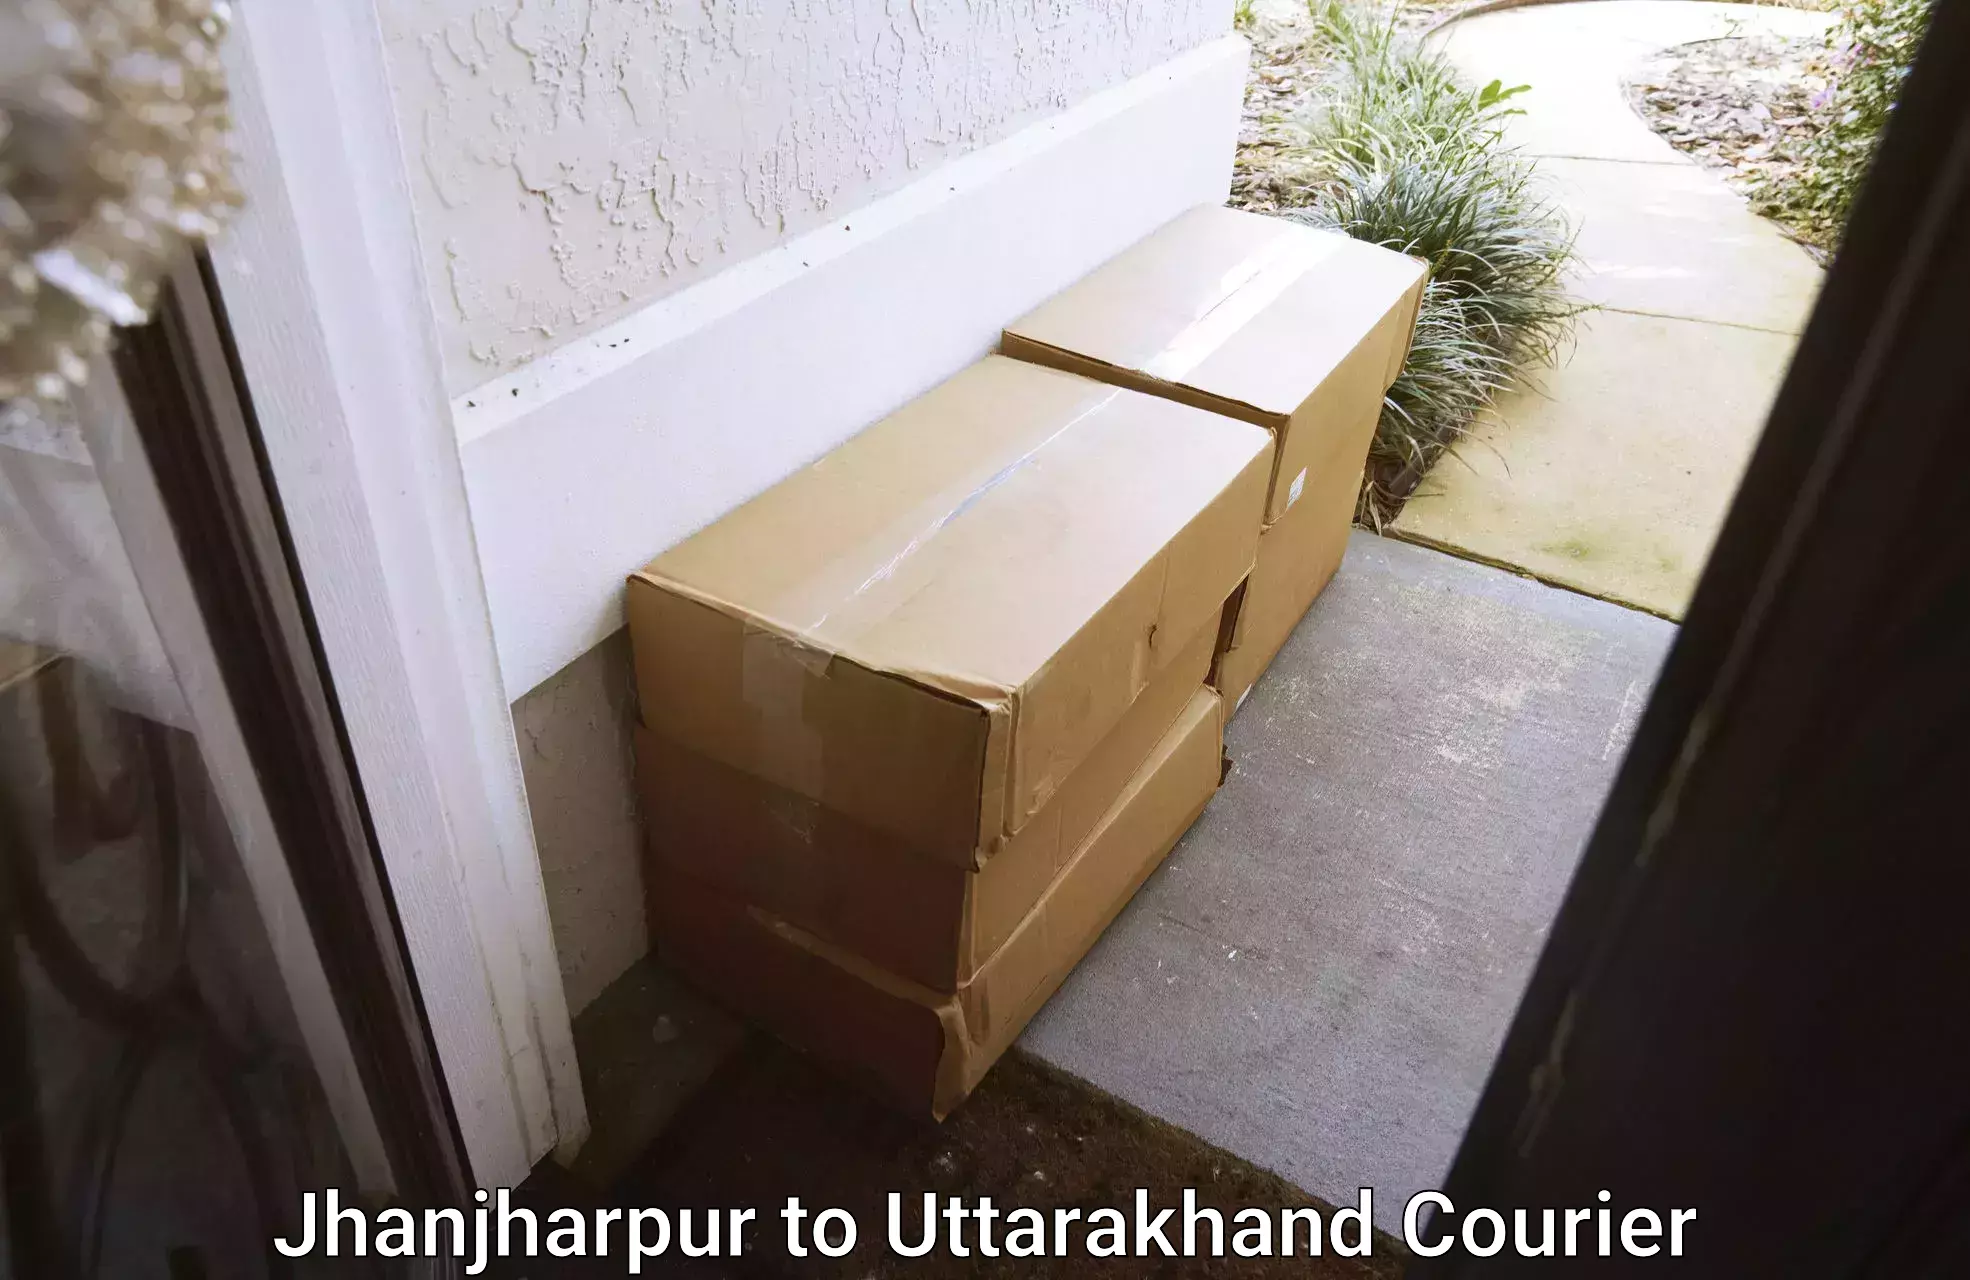 Household moving experts Jhanjharpur to Uttarakhand